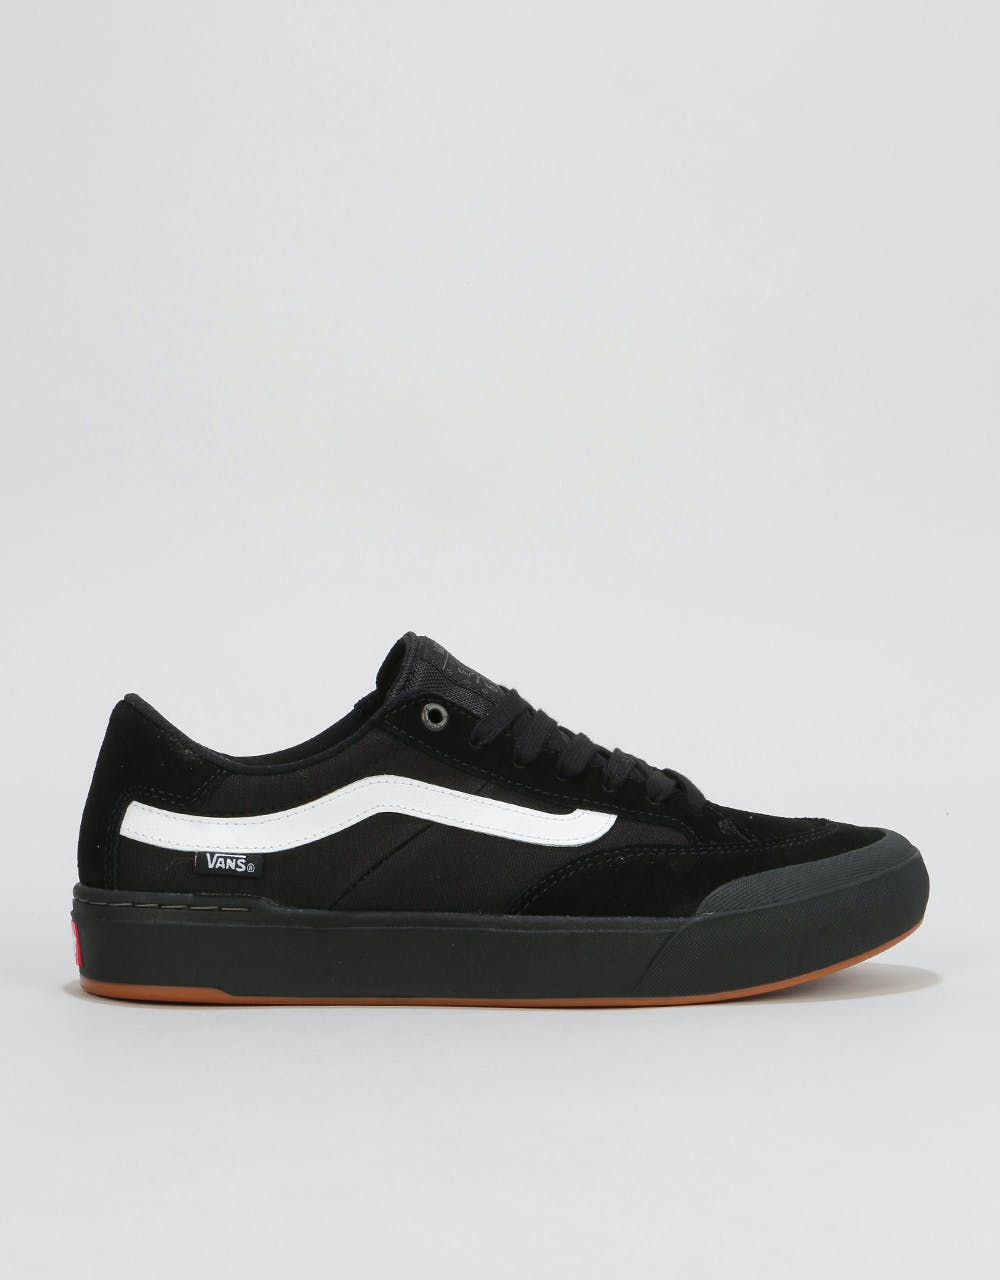 Vans Berle Pro Skate Shoes - Black 